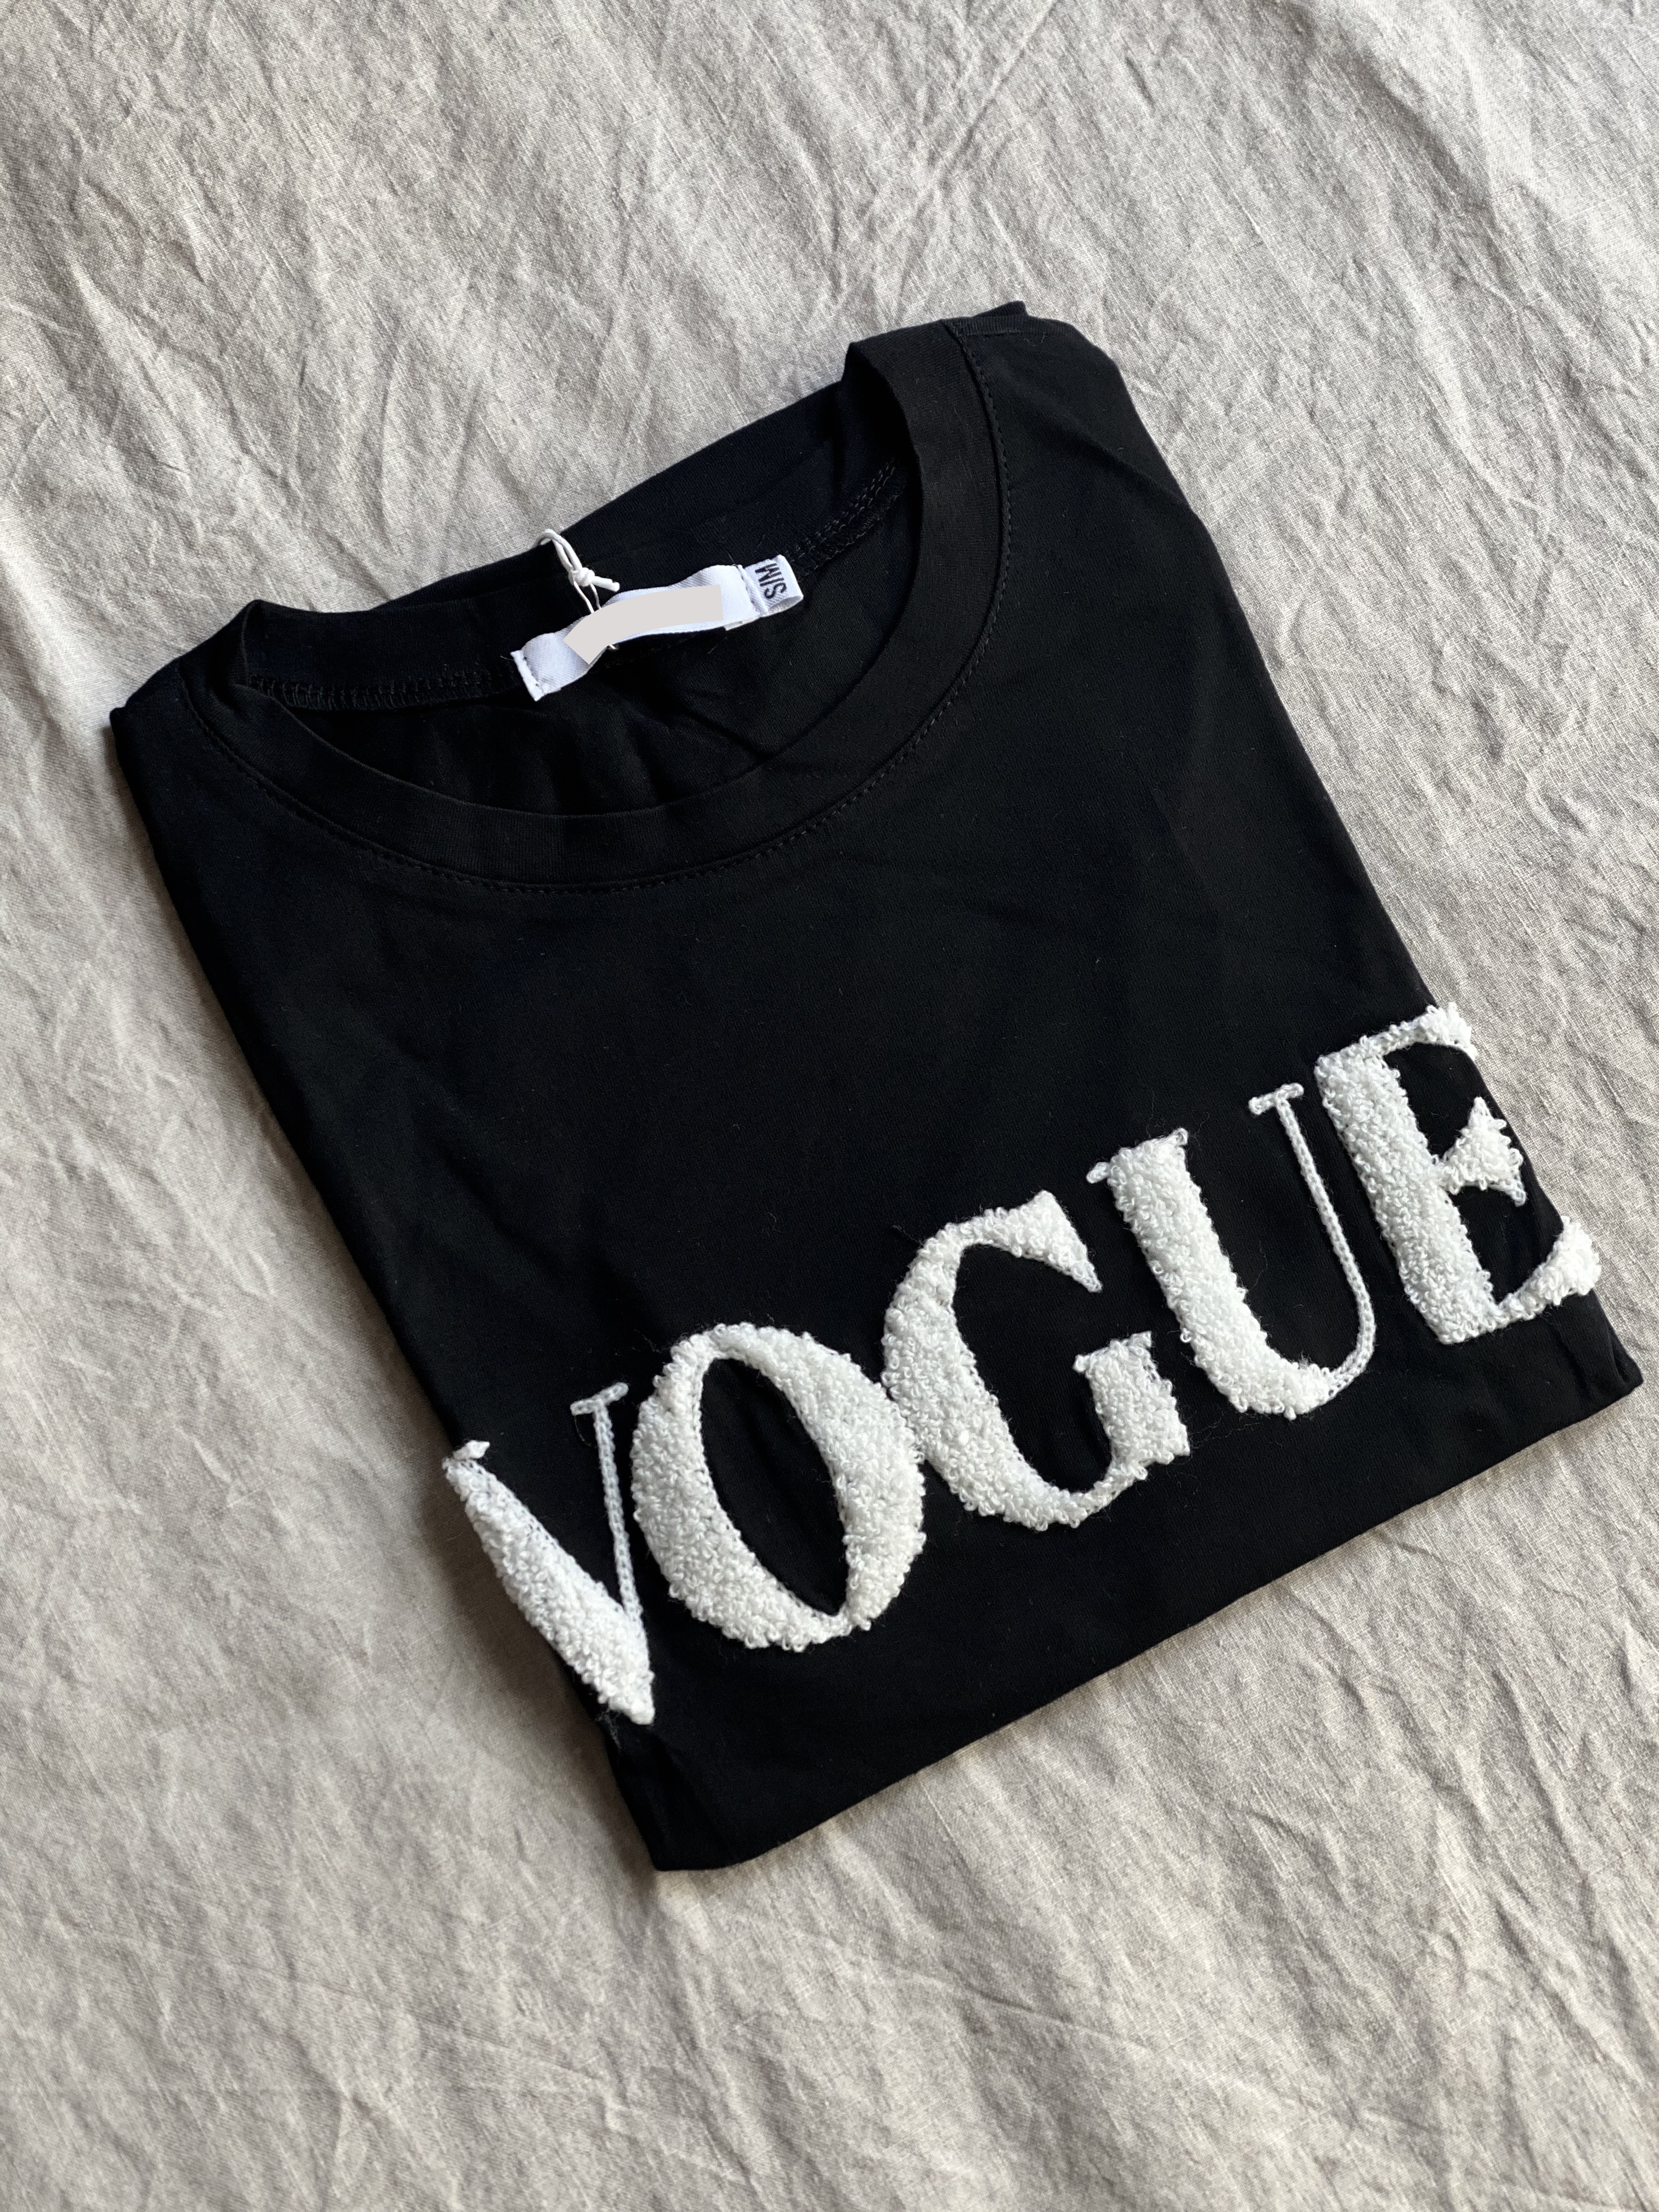 Shirt "VOGUE"